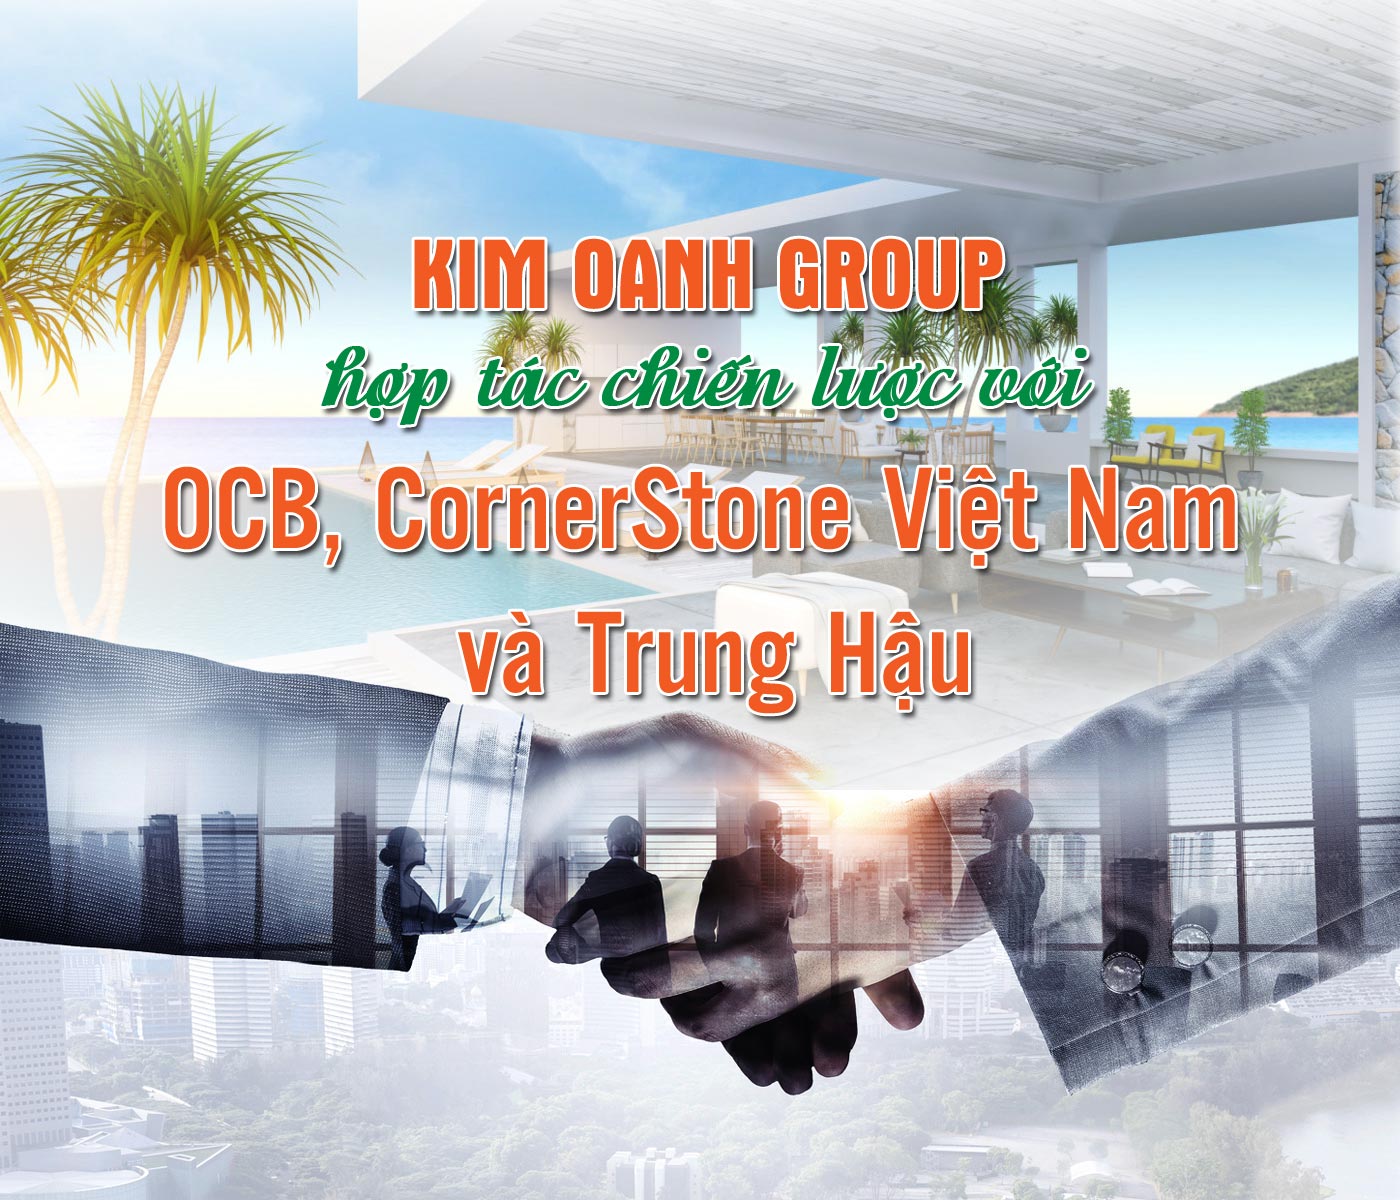 Kim Oanh Group hợp tác chiến lược với OCB, CornerStone Việt Nam và Trung Hậu - Ảnh 1